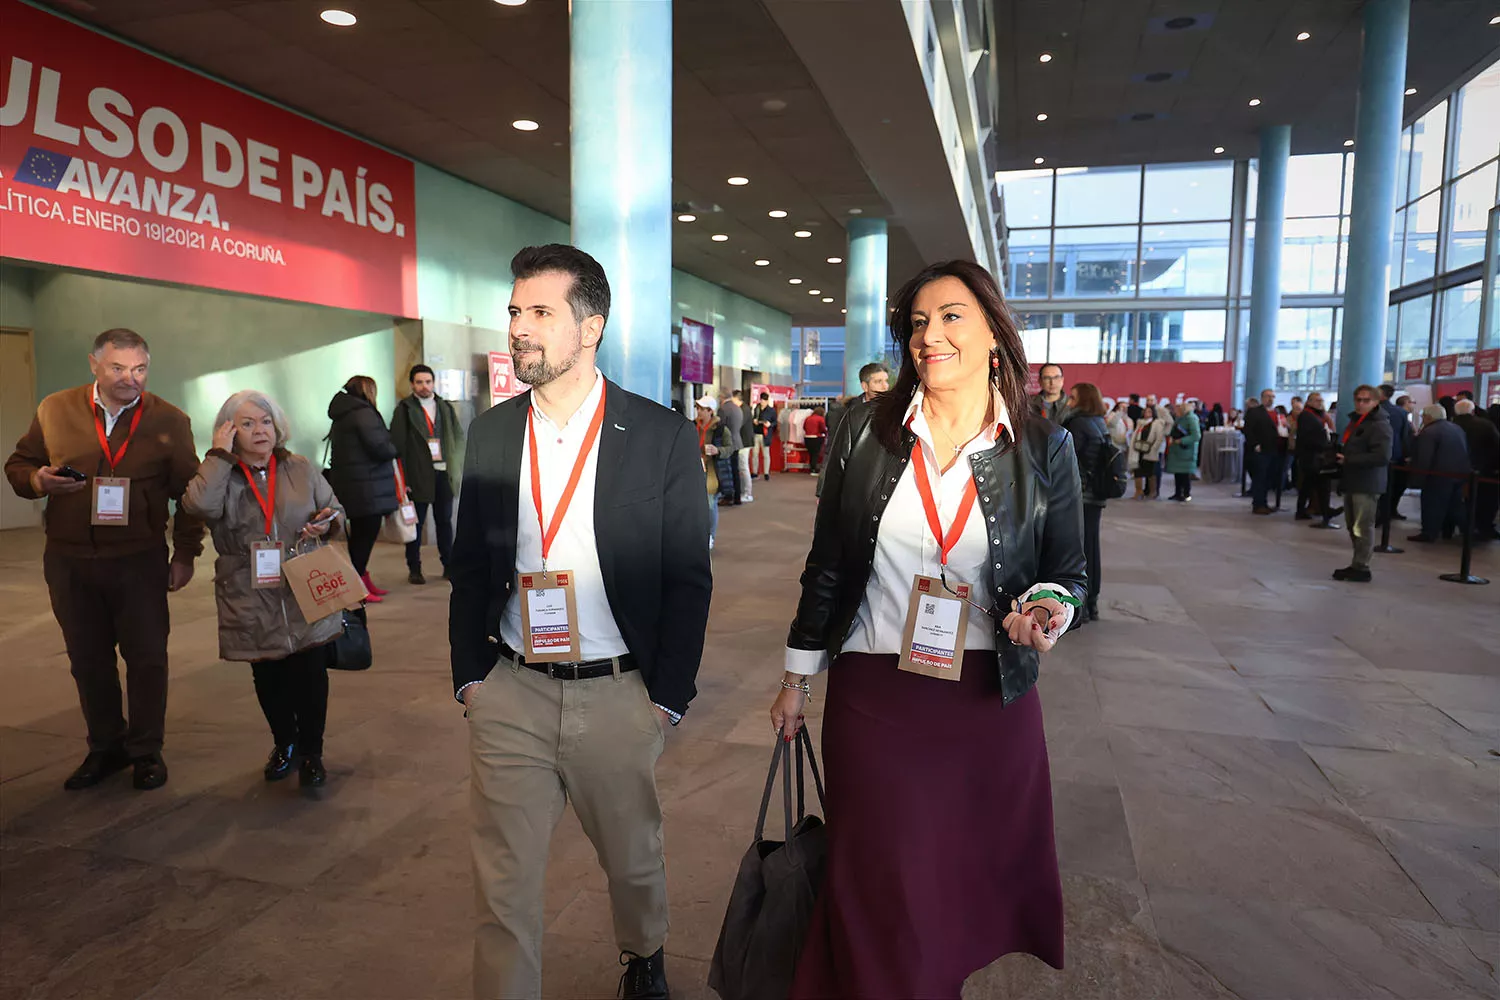 Luis Tudanca y Ana Sánchez participan en la Convención Política del PSOE 'Impulso de país', celebrada en A Coruña